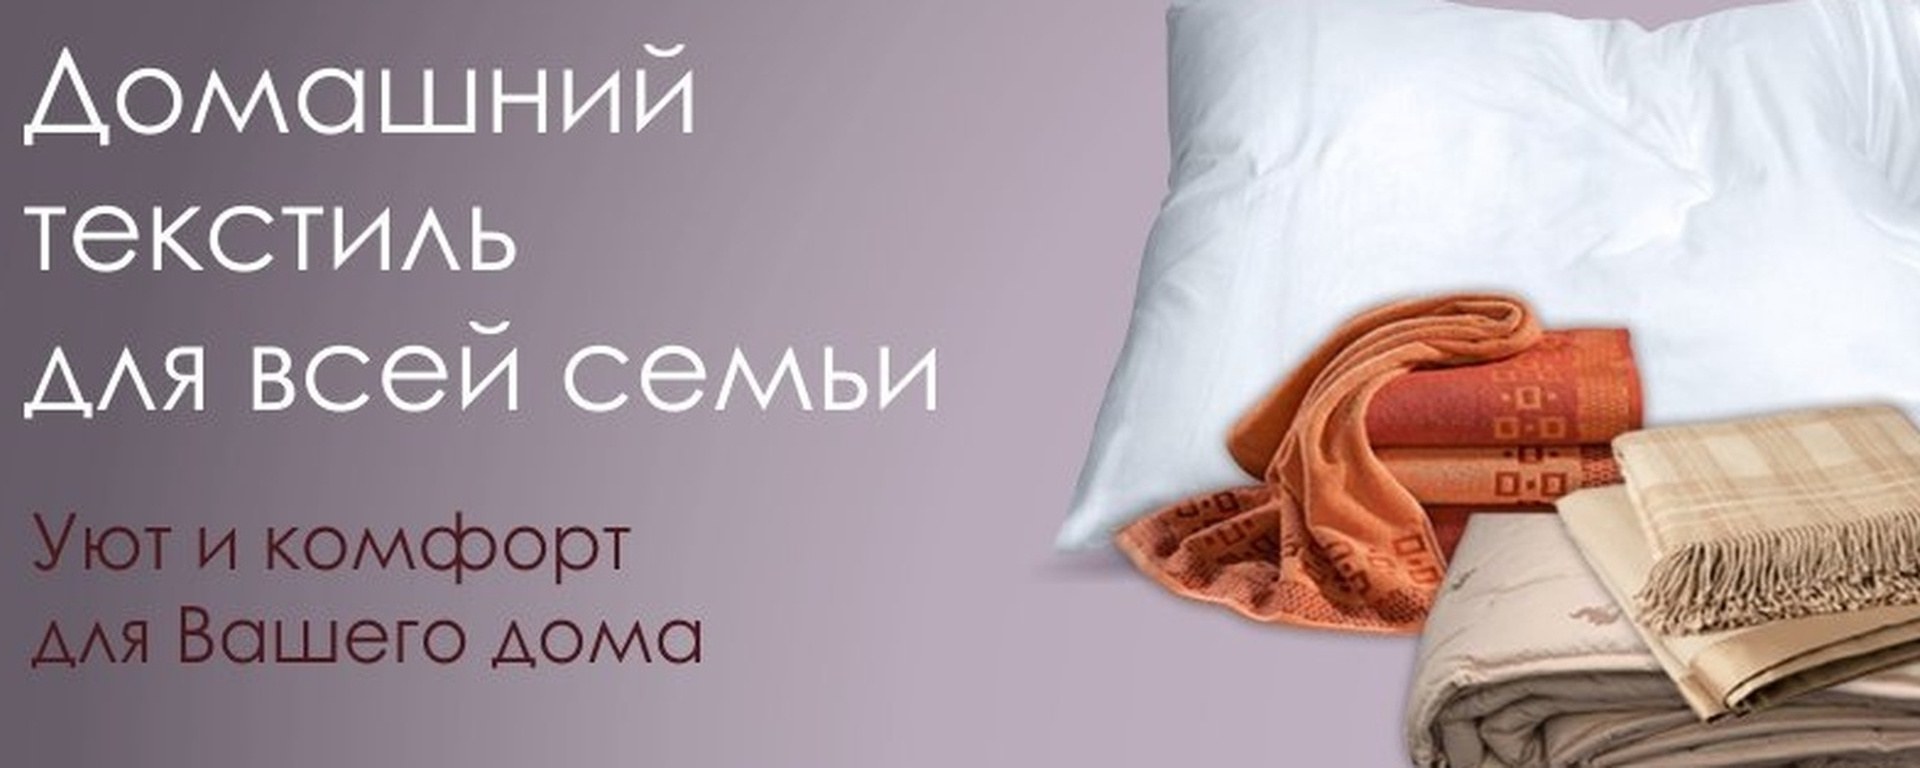 Реклама постельного белья